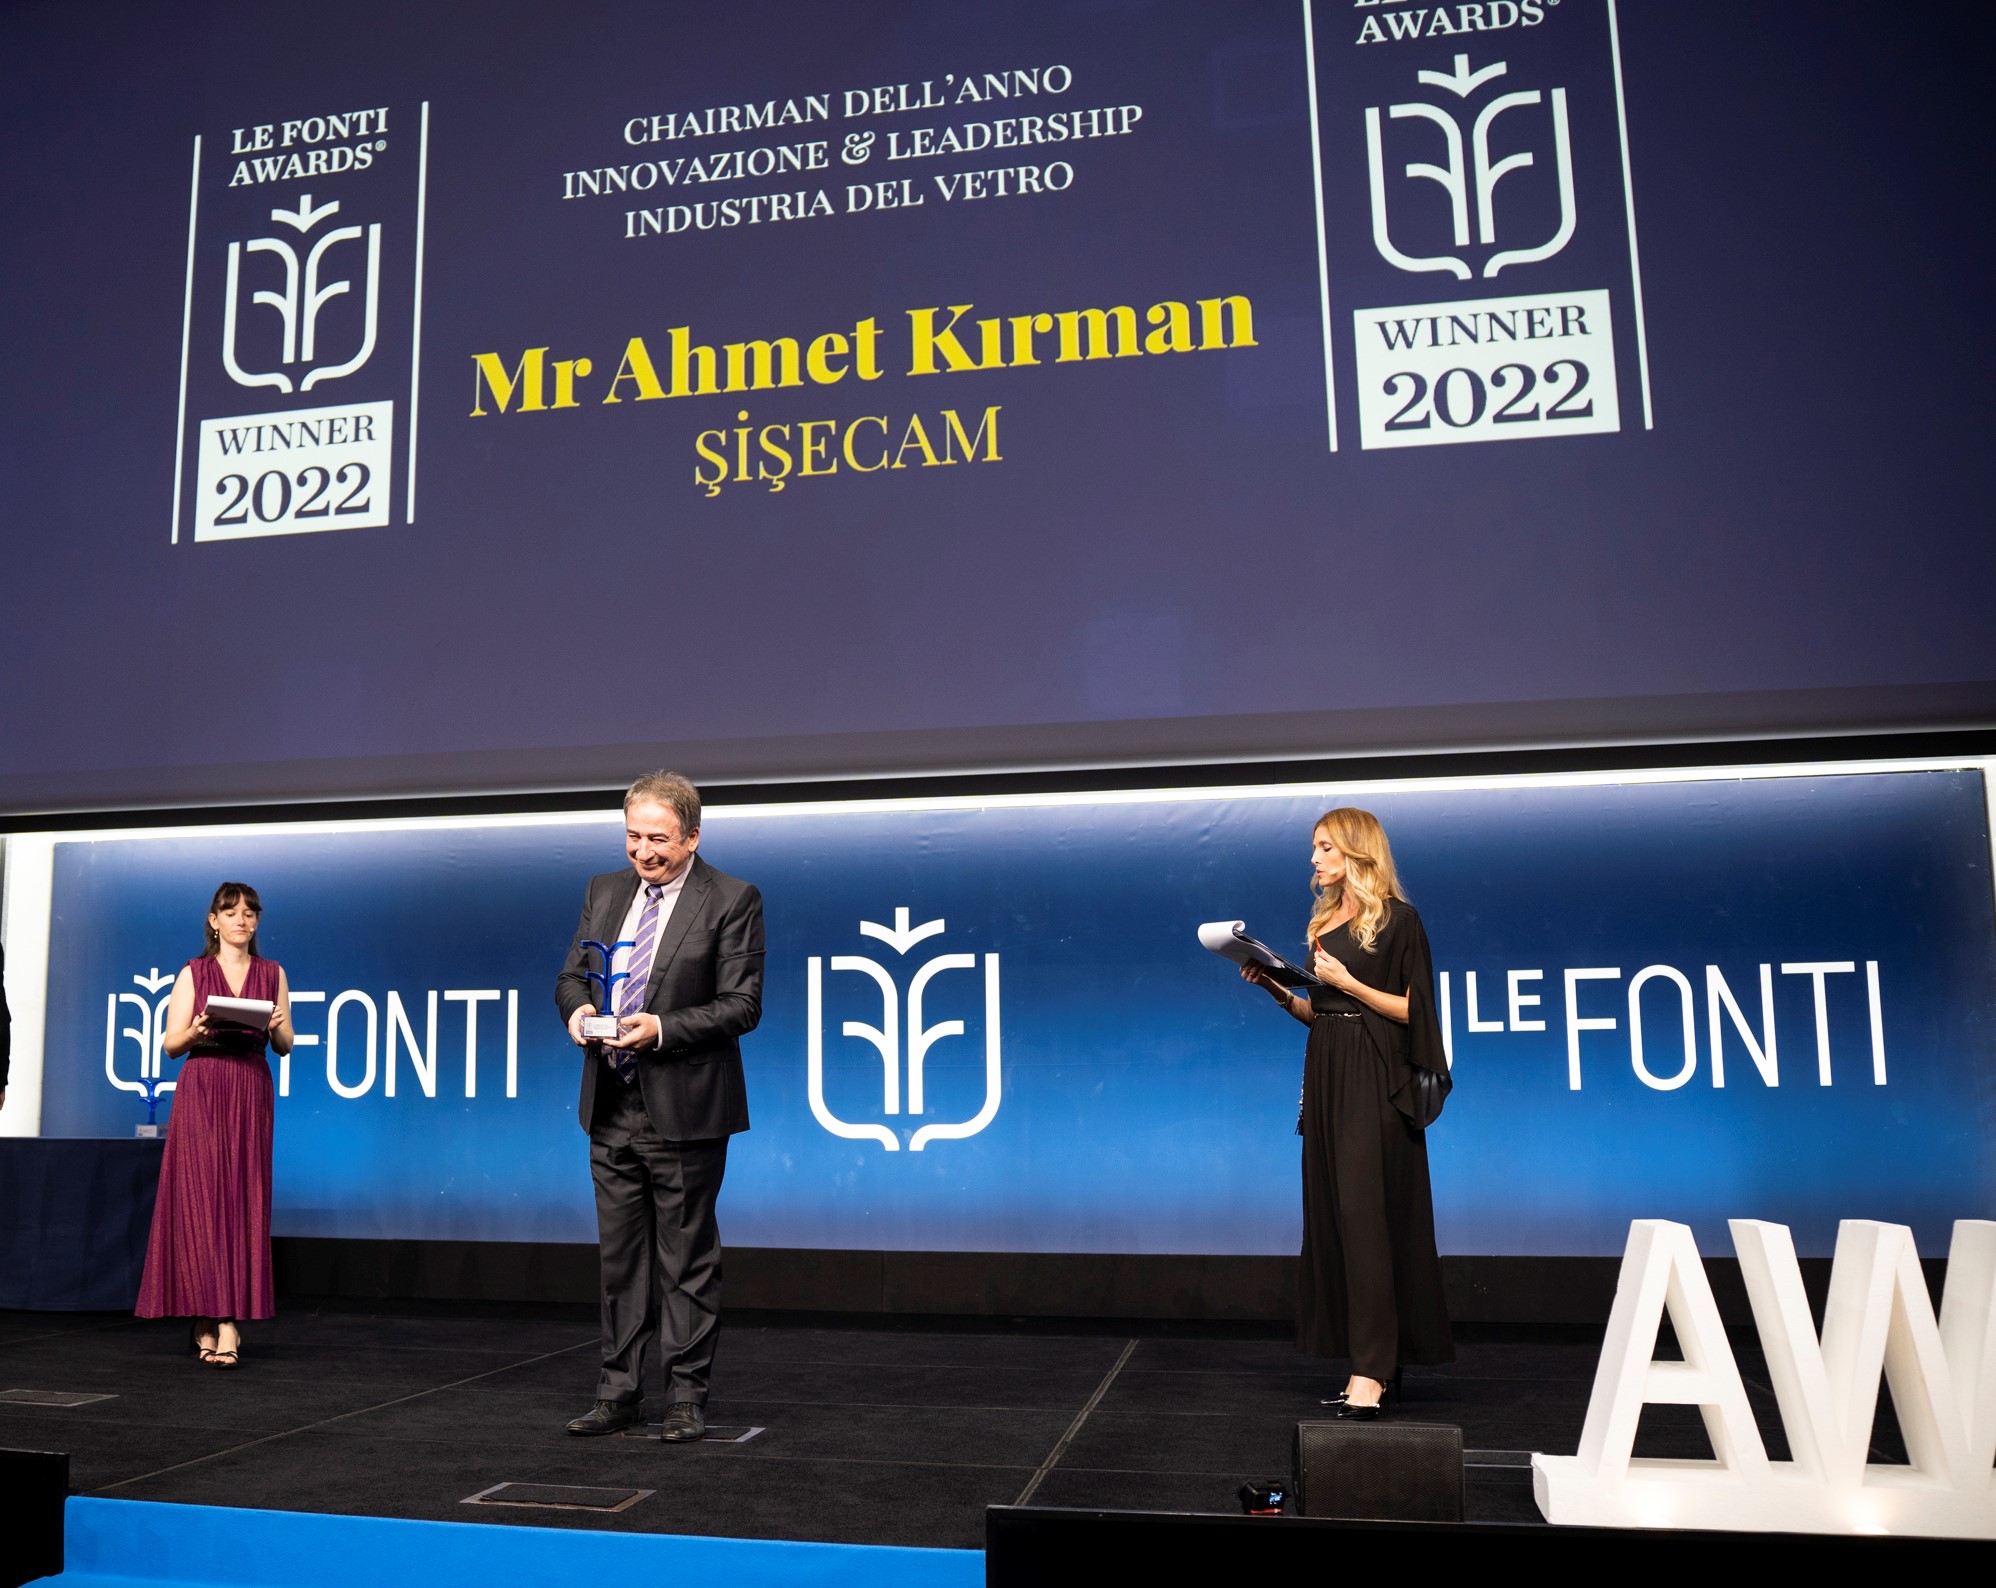 Il Prof. Dott. Ahmet Kırman riceve il premio "Chairman dell'Anno" da Le Fonti, Canale Leader di Notizie Economiche Italiano